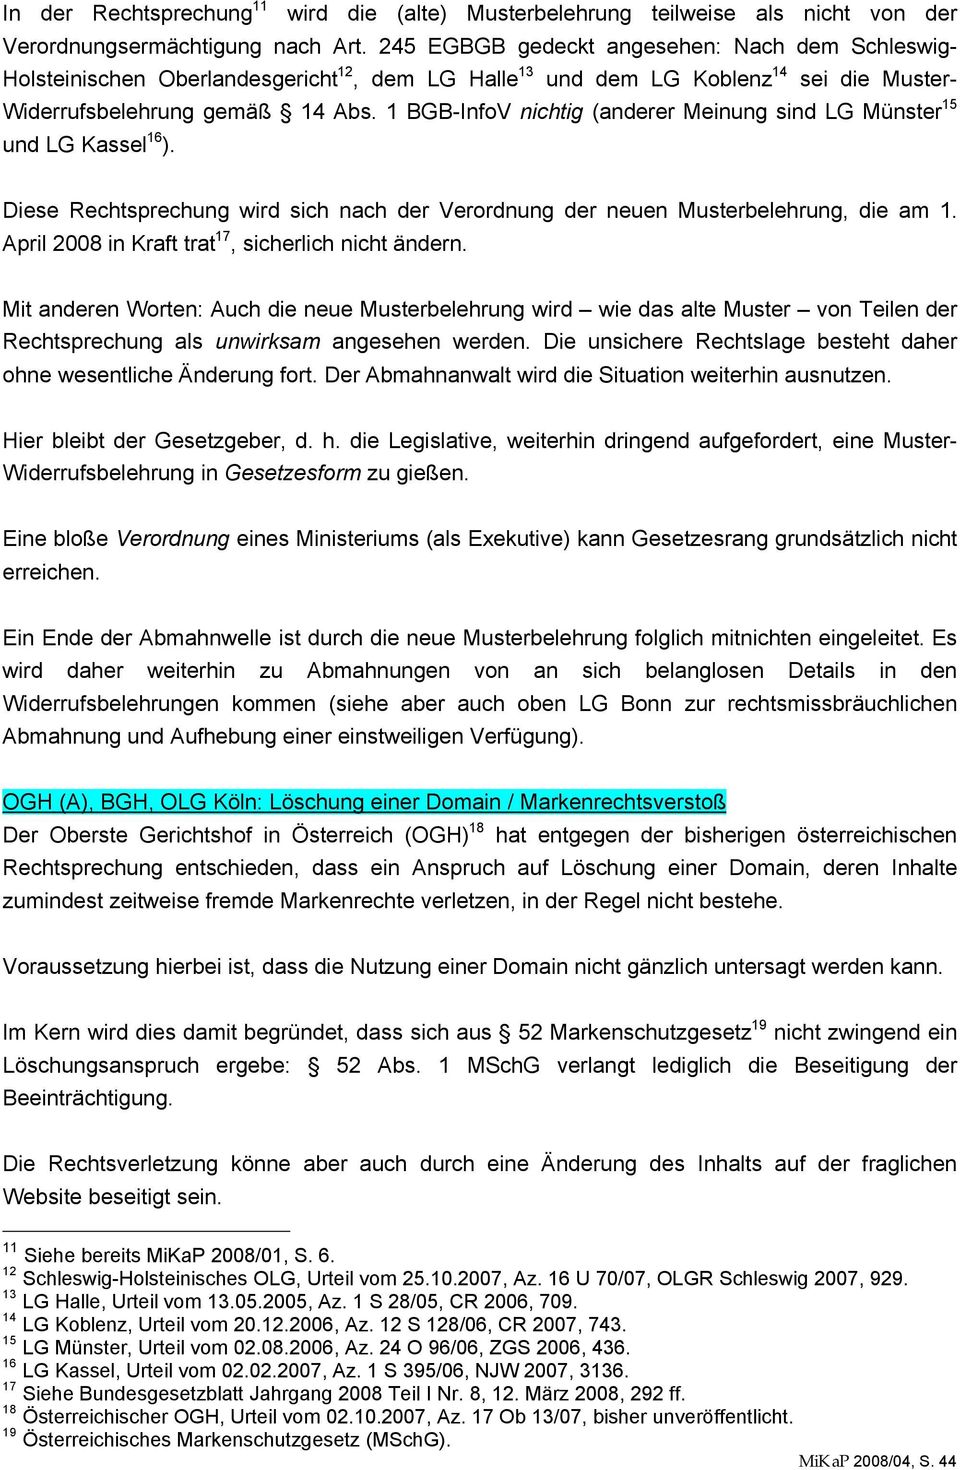 1 BGB-InfoV nichtig (anderer Meinung sind LG Münster 15 und LG Kassel 16 ). Diese Rechtsprechung wird sich nach der Verordnung der neuen Musterbelehrung, die am 1.